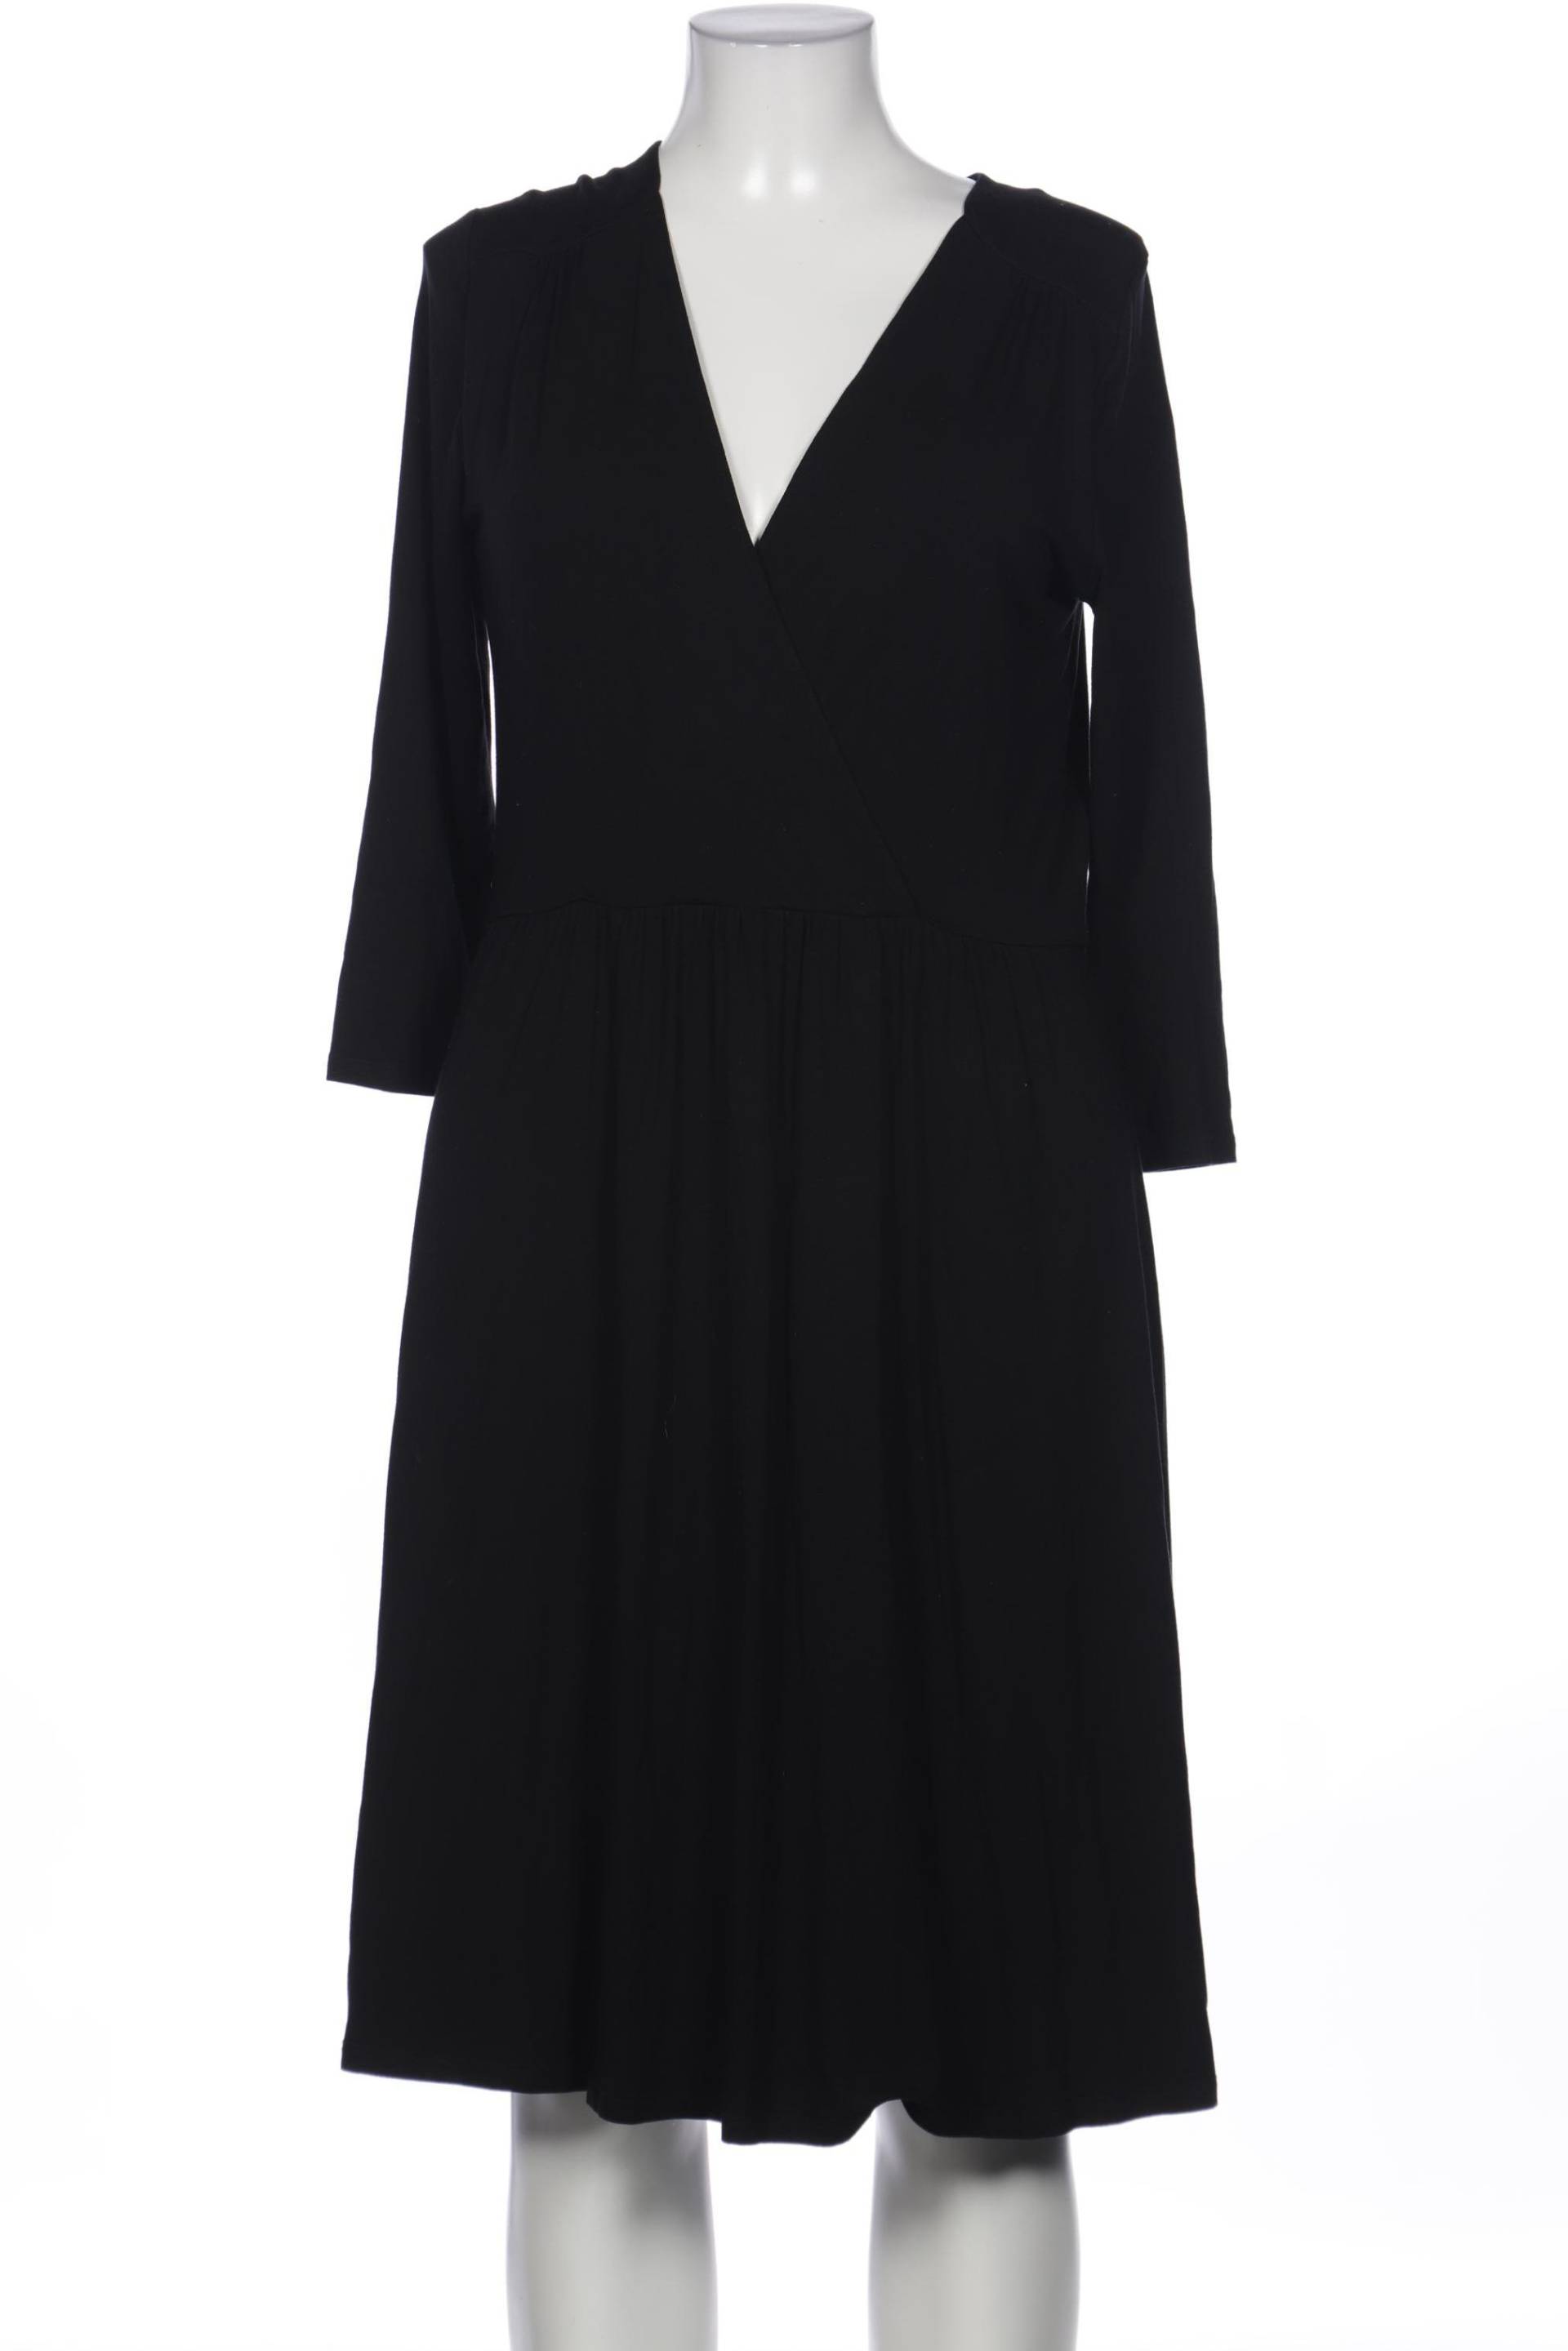 Boden Damen Kleid, schwarz, Gr. 42 von Boden